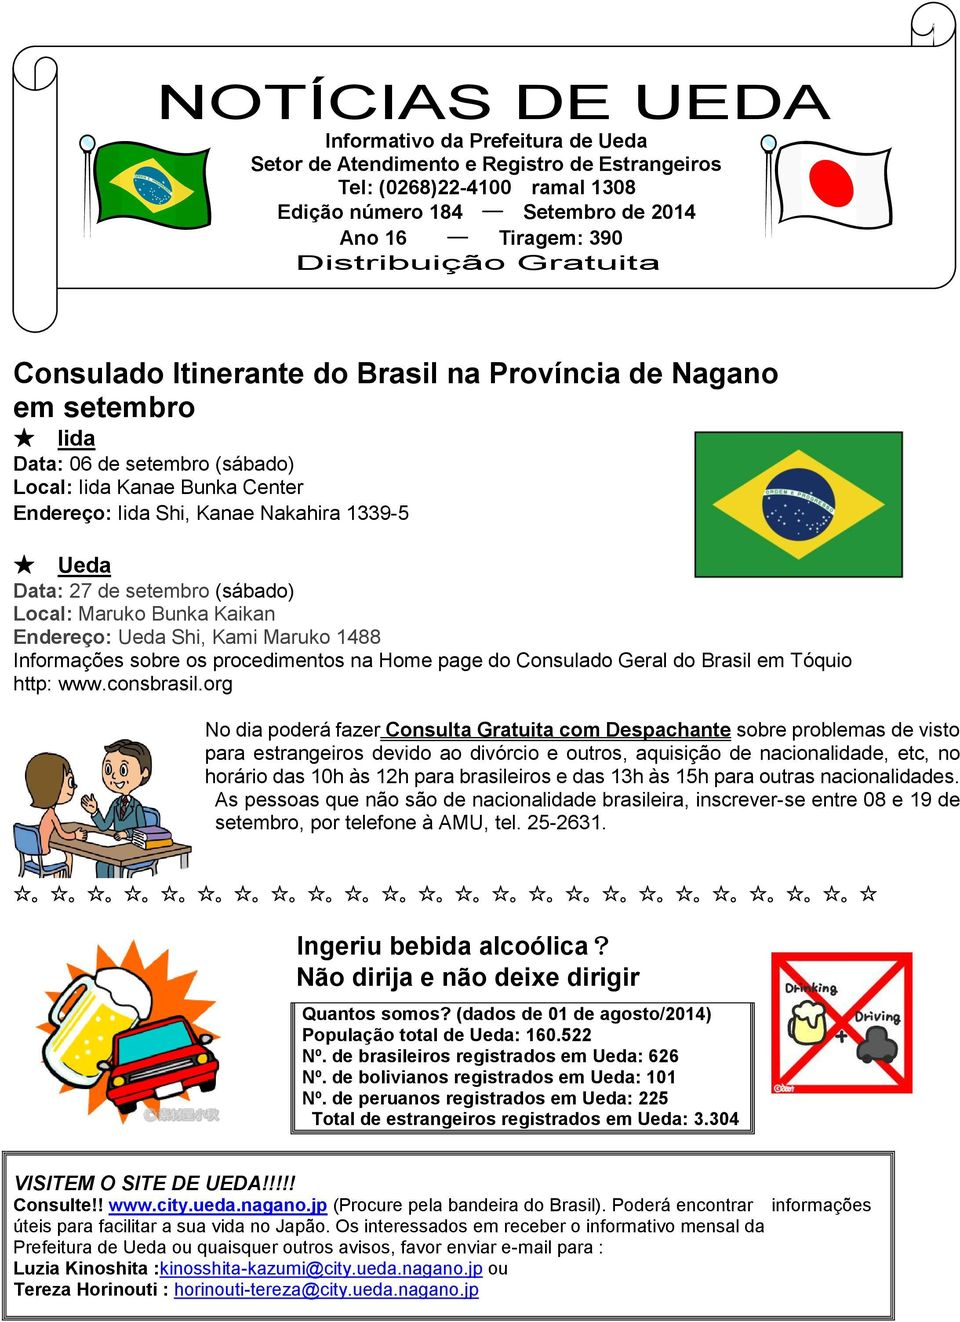 (sábado) Local: Maruko Bunka Kaikan Endereço: Shi, Kami Maruko 1488 Informações sobre os procedimentos na Home page do Consulado Geral do Brasil em Tóquio http: www.consbrasil.